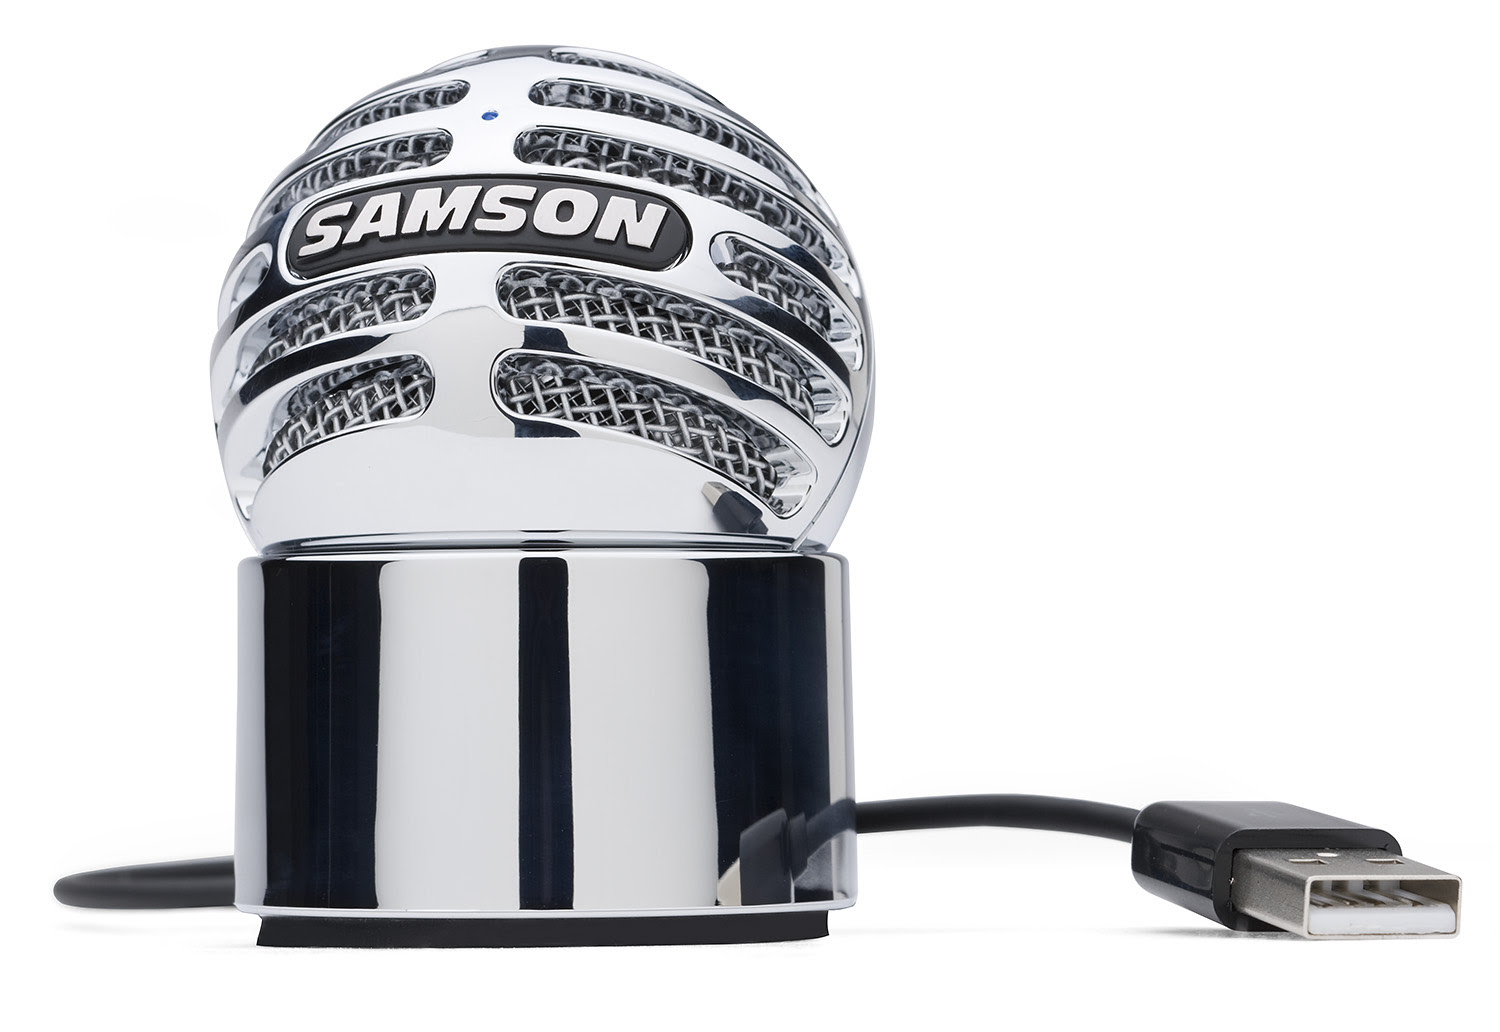 samson sound deck noise cancellation software download